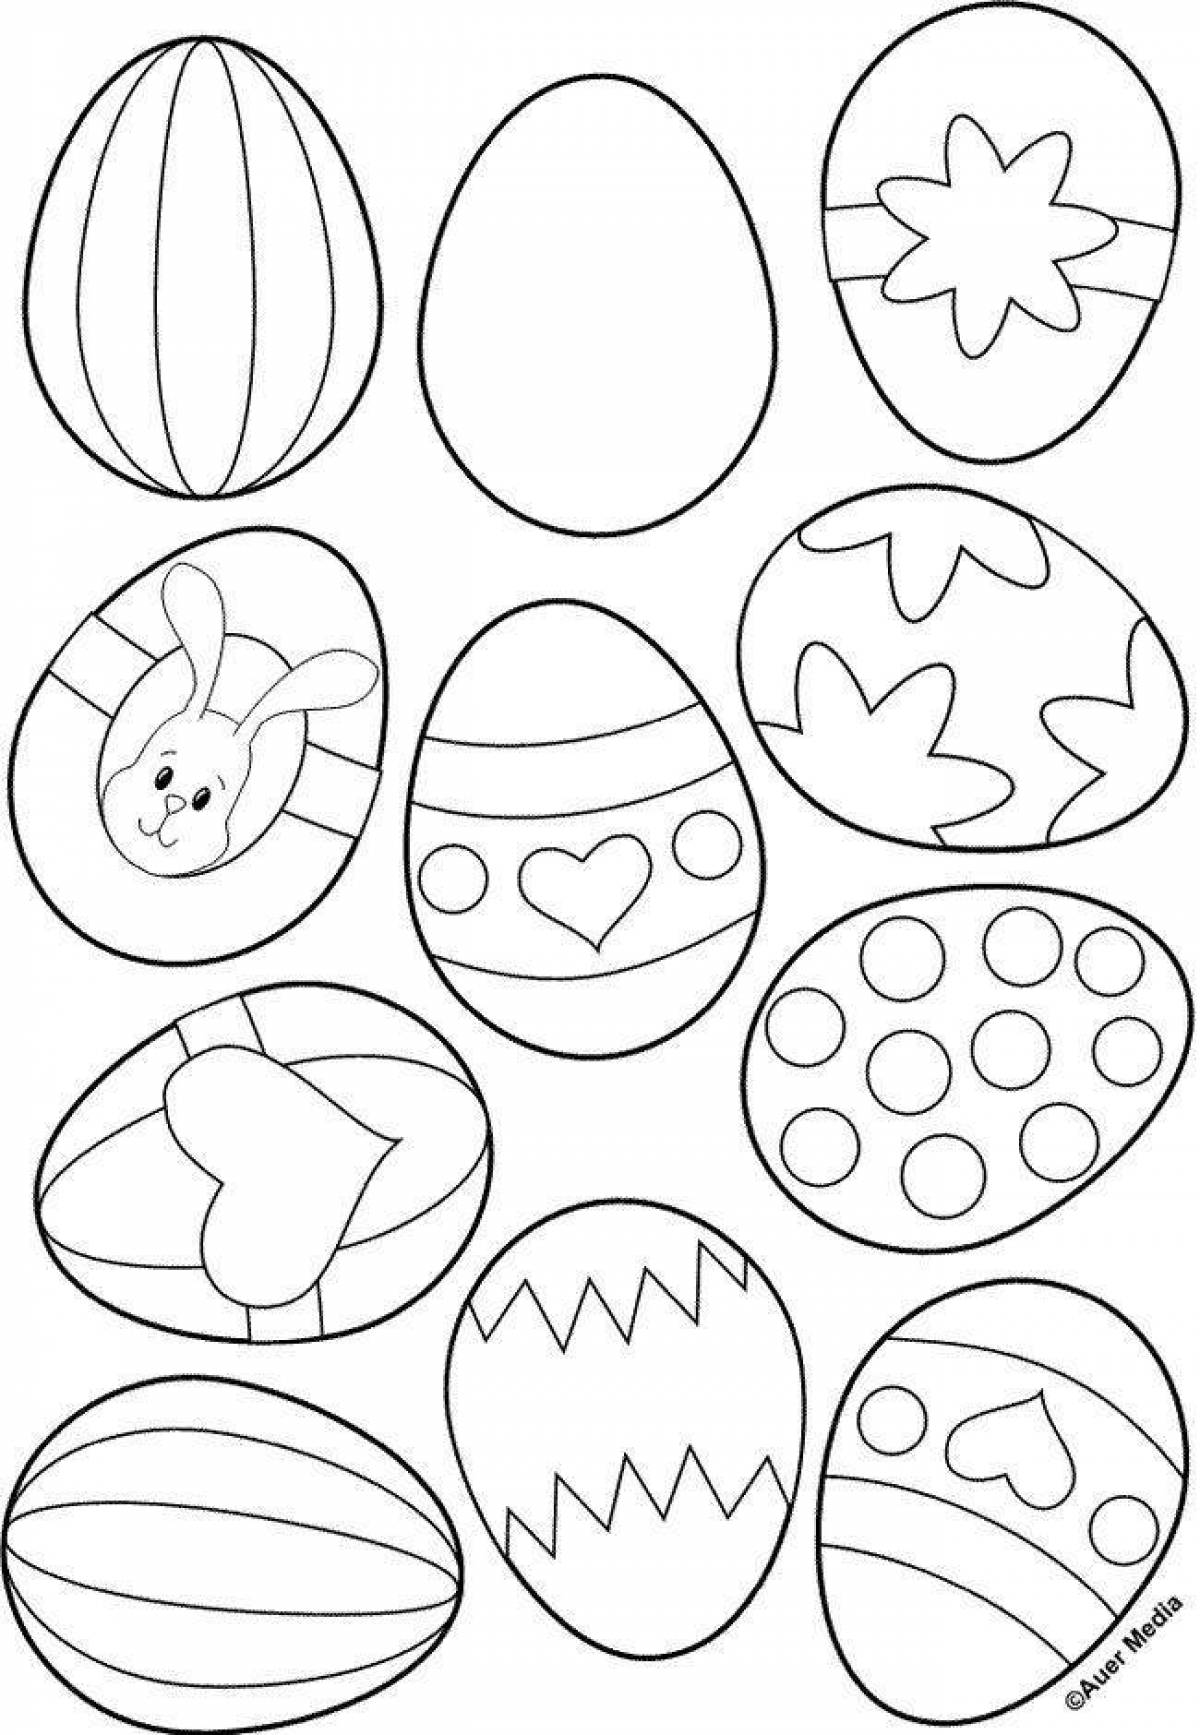 Egg for kids #6